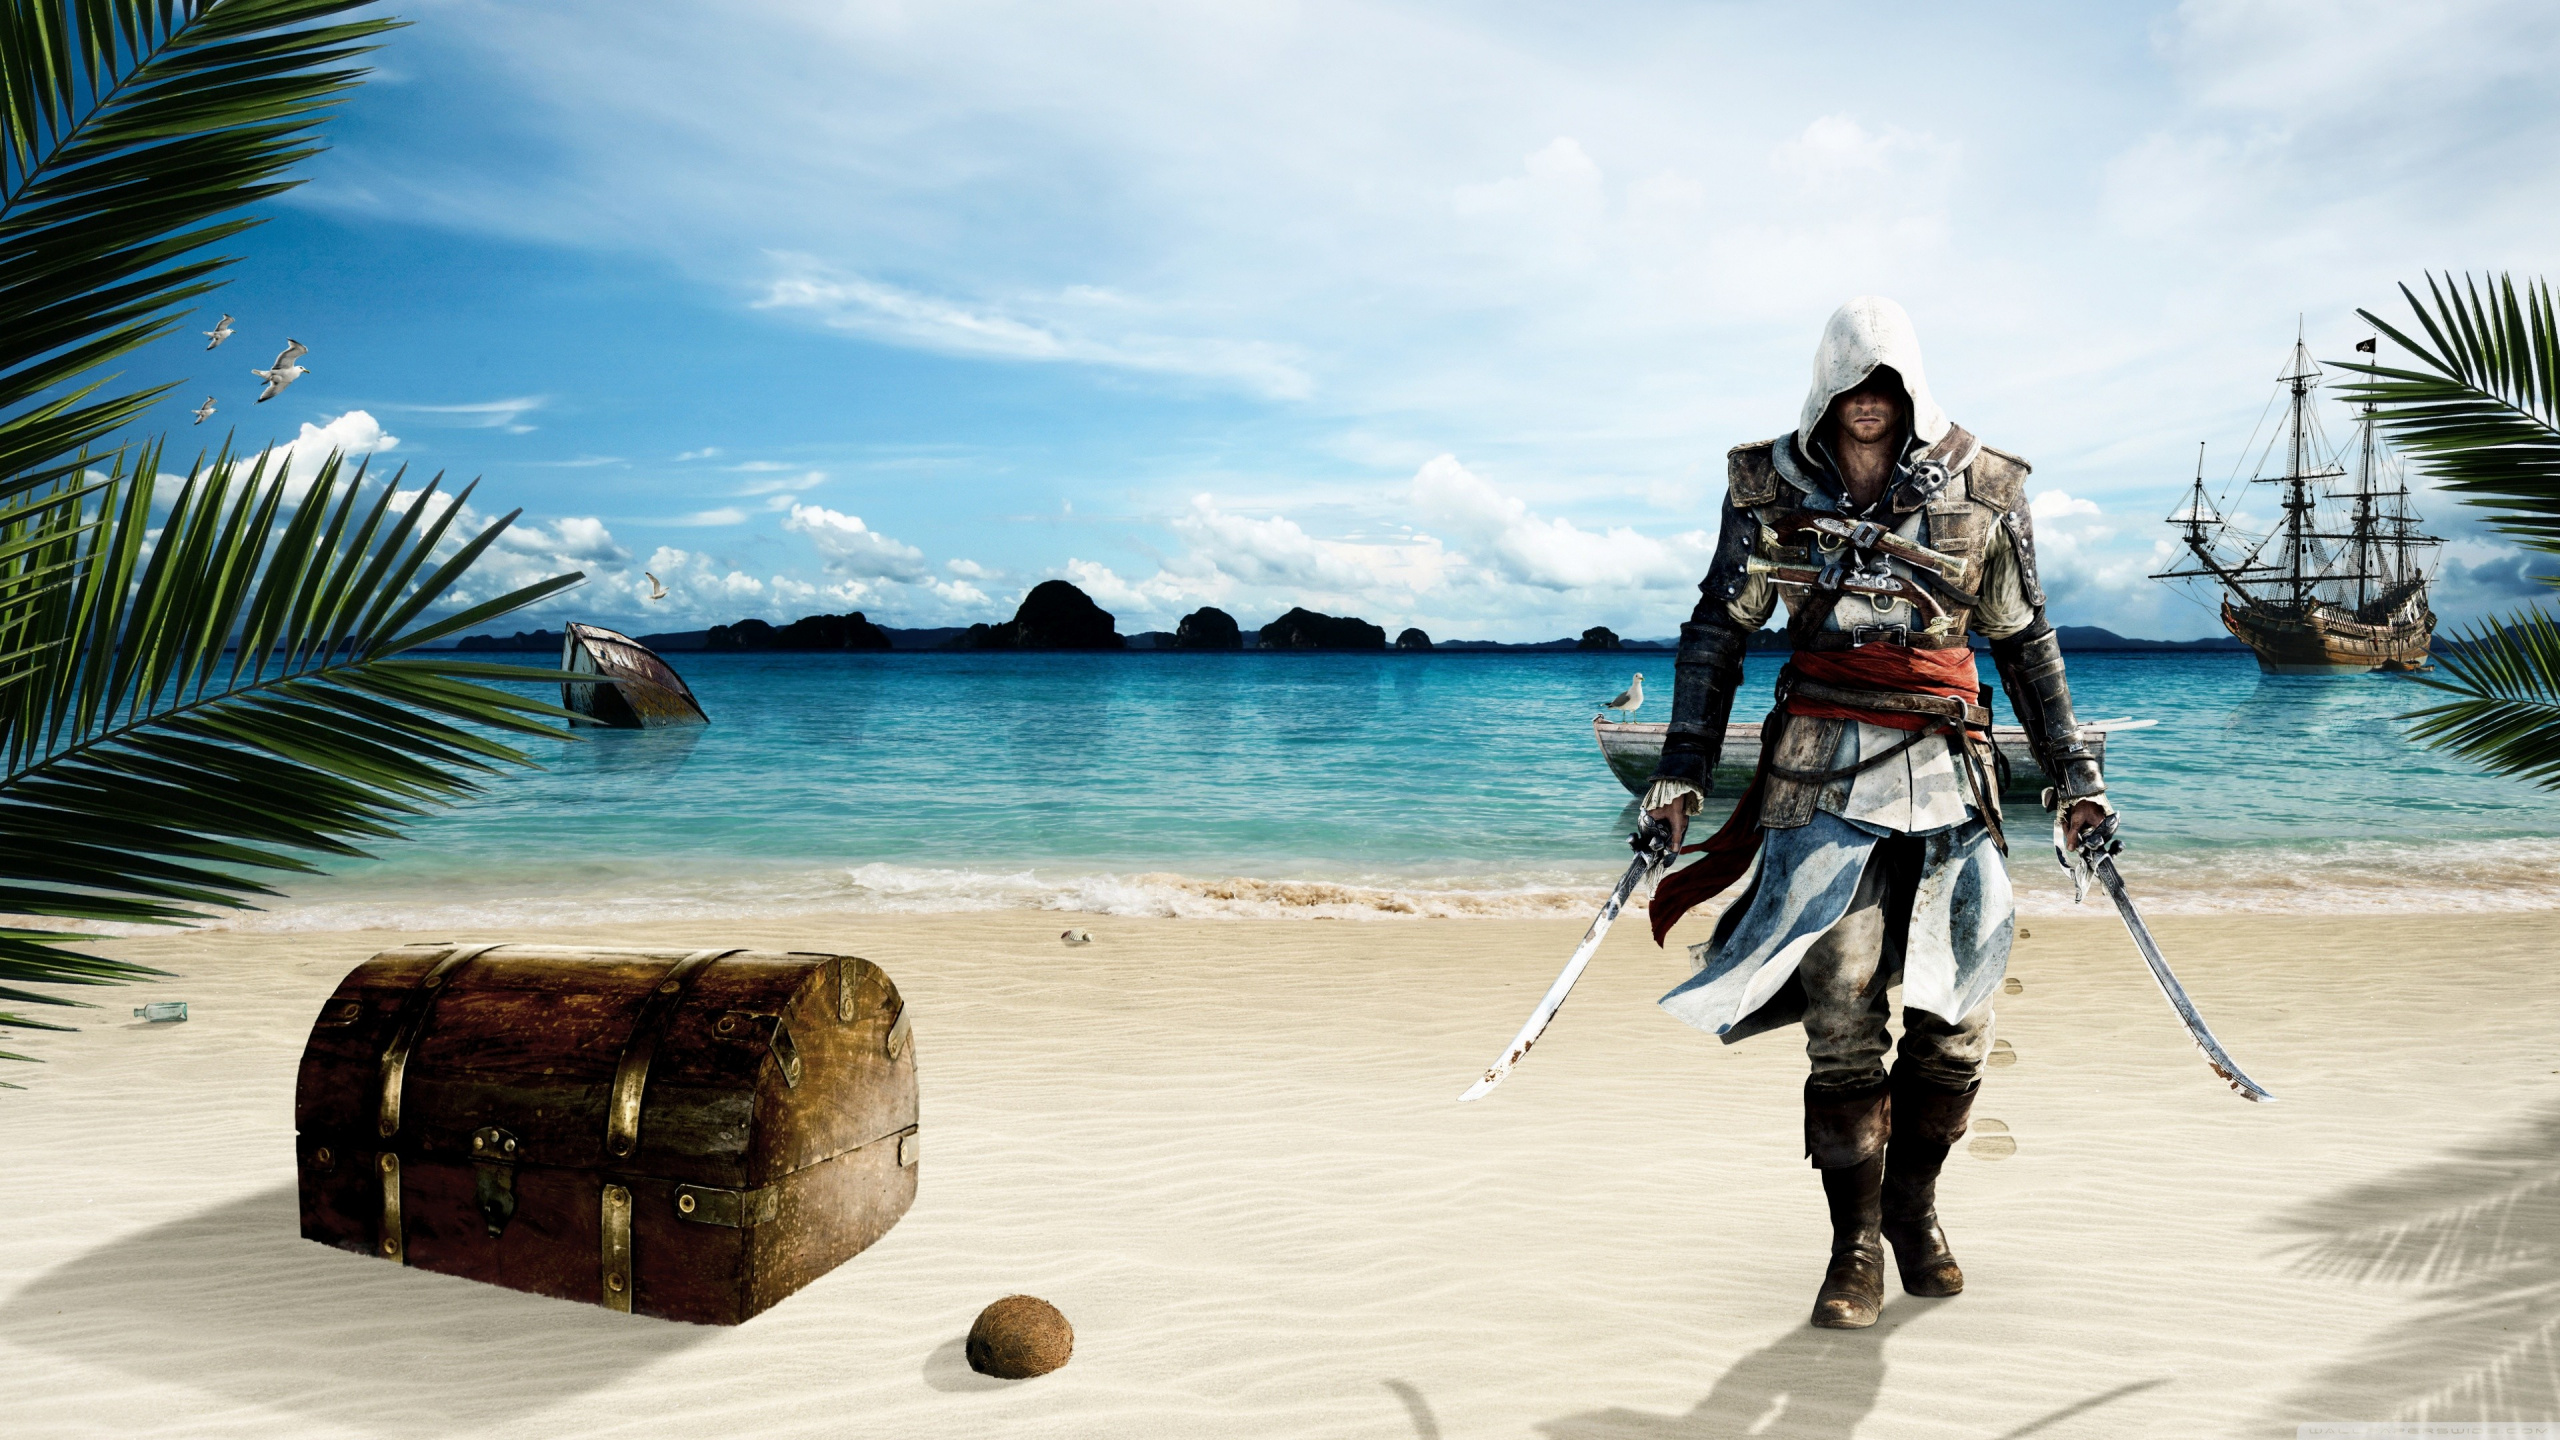 Turismo, Mar, Vacaciones, Viaje, Assassins Creed III. Wallpaper in 2560x1440 Resolution